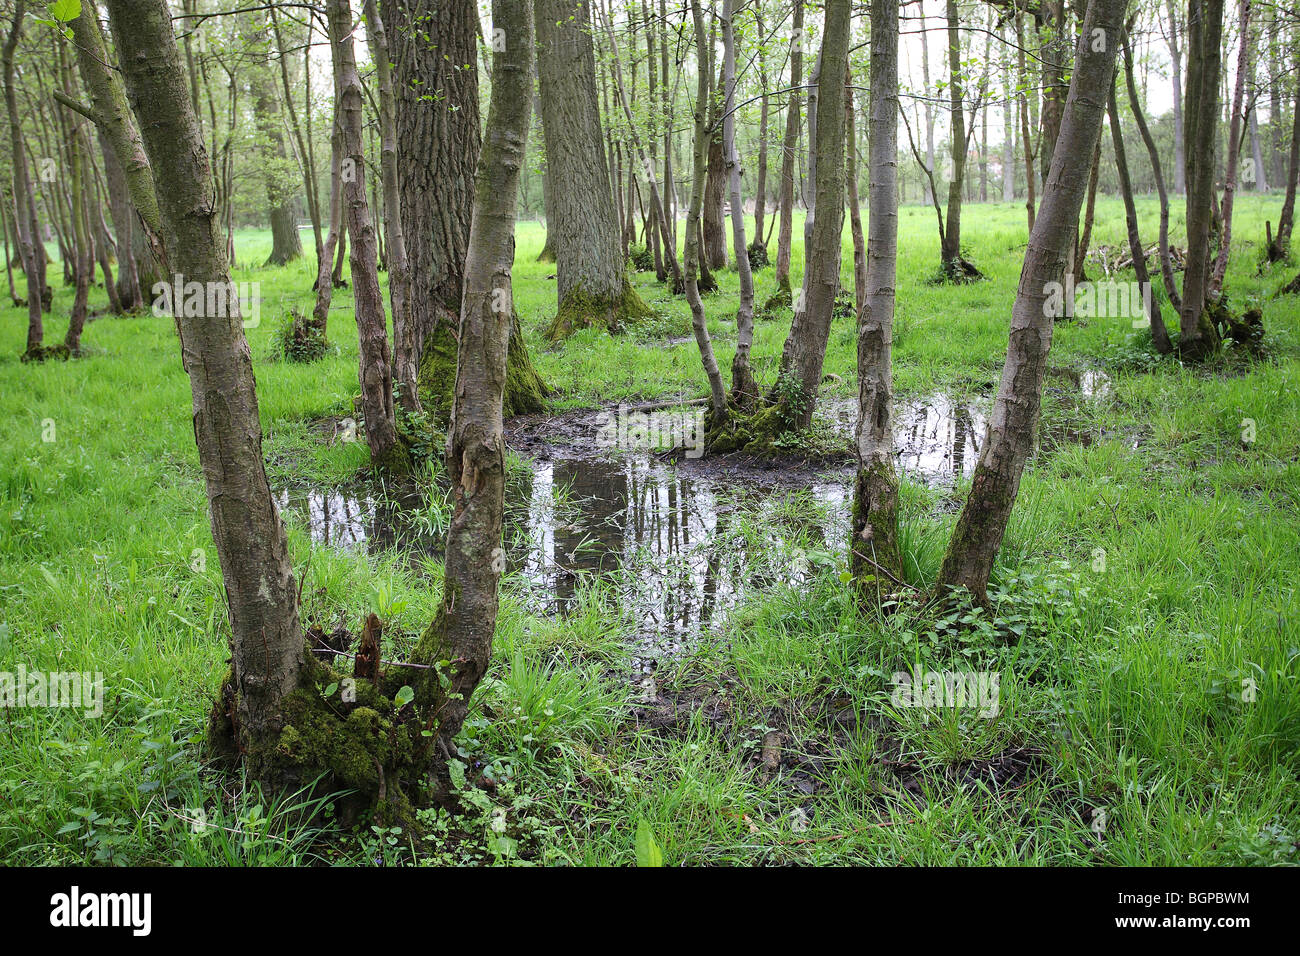 Brook forest, Wellemeersen nature reserve, Belgium Stock Photo